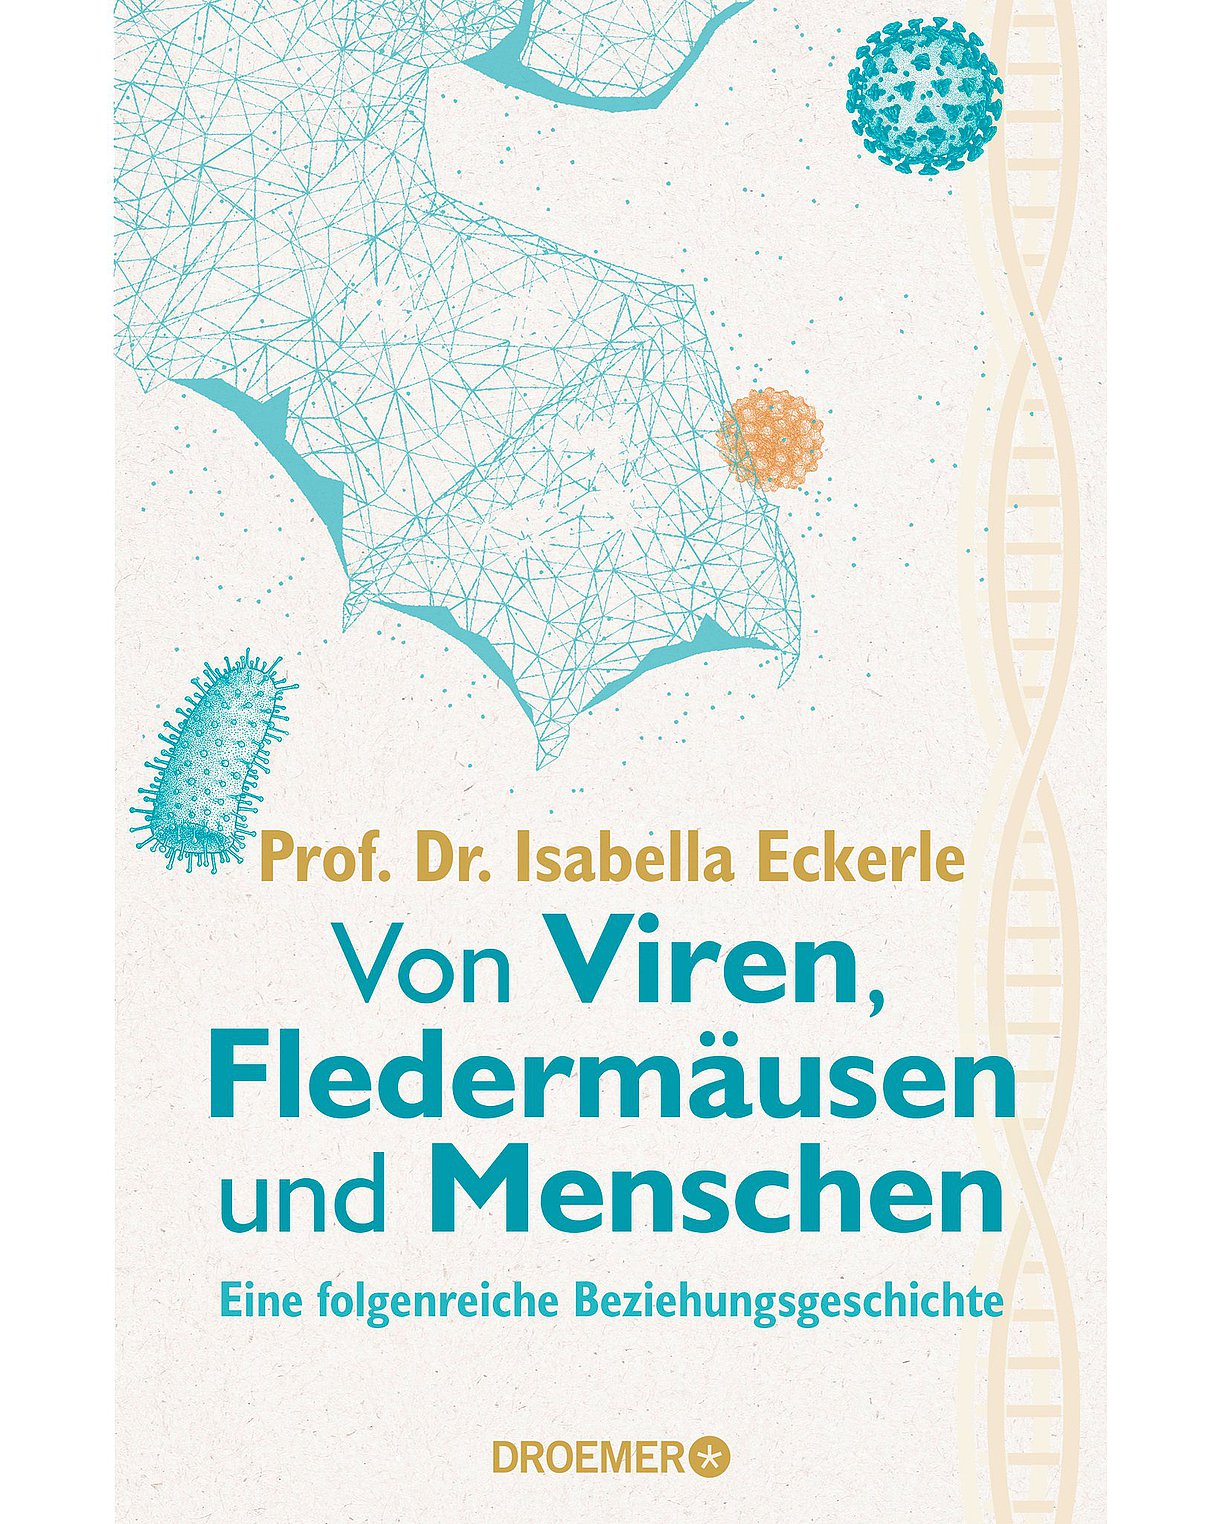 Cover des Buches "Von Viren, Fledermäusen und Menschen" mit einem strukturierten Fledermausflügel und verschiedenen Erregern